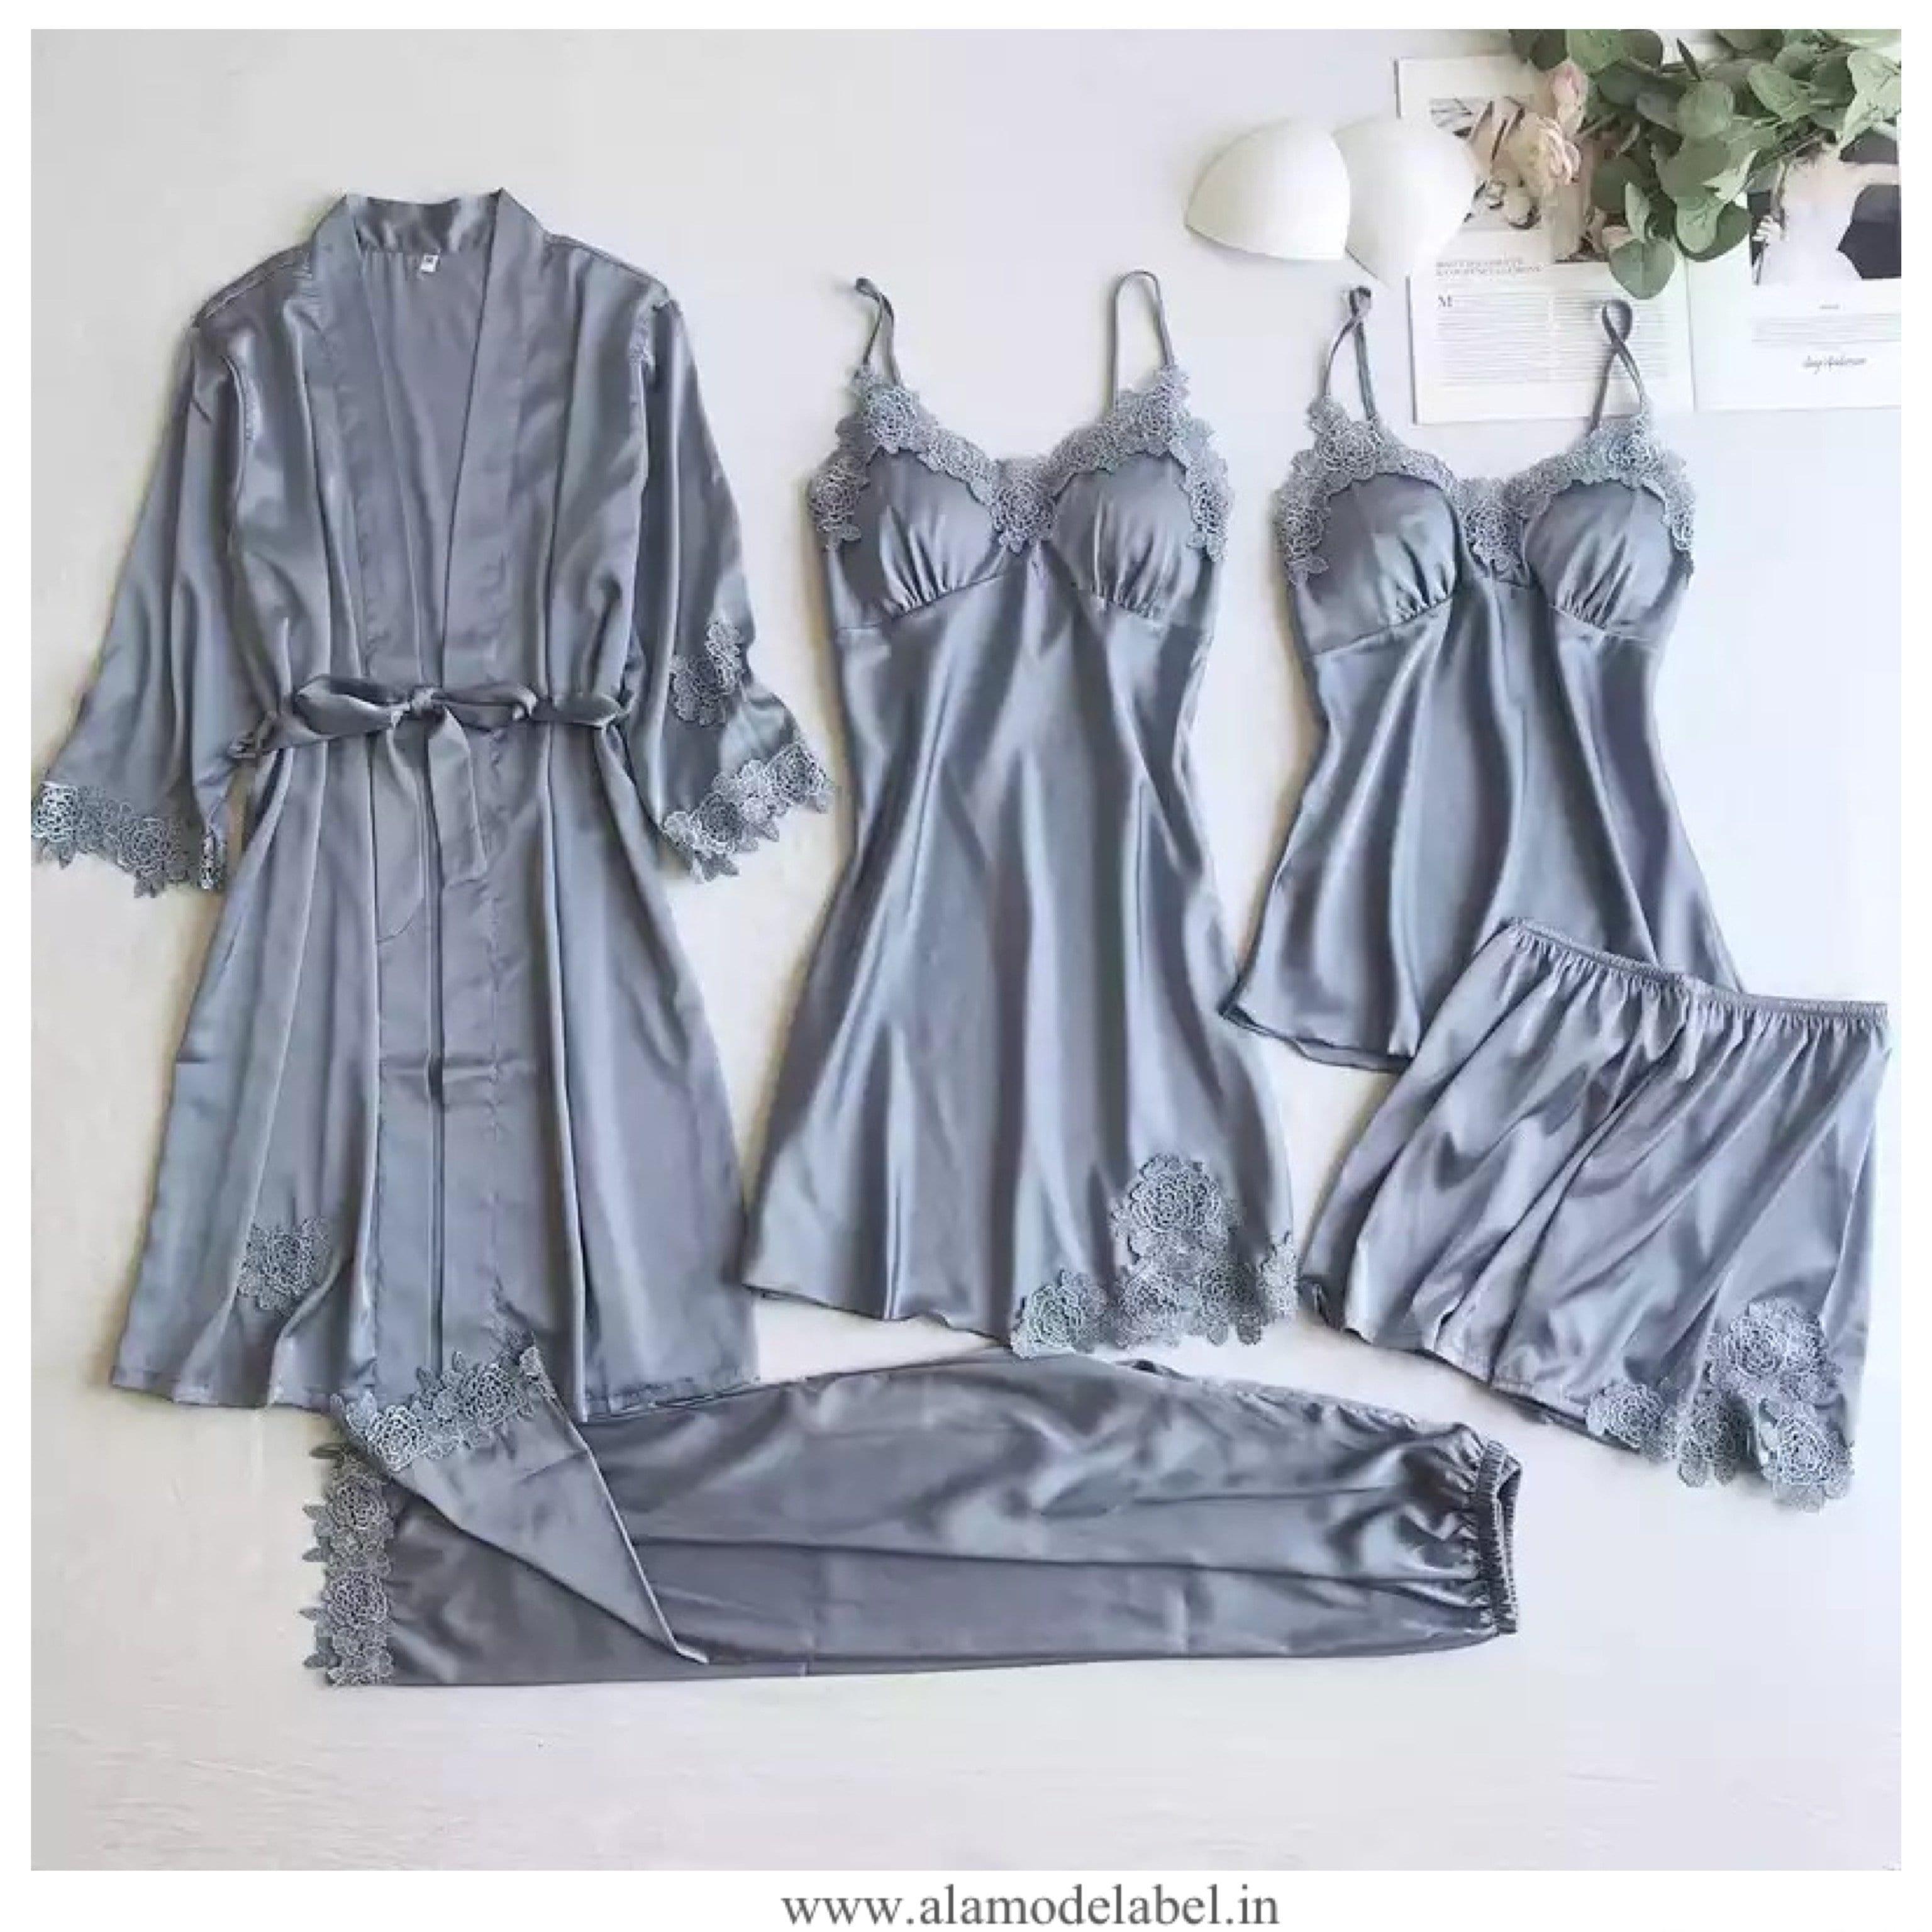 Buy 2 Pcs Short Robe & Nightie Set in Purple Color Online India